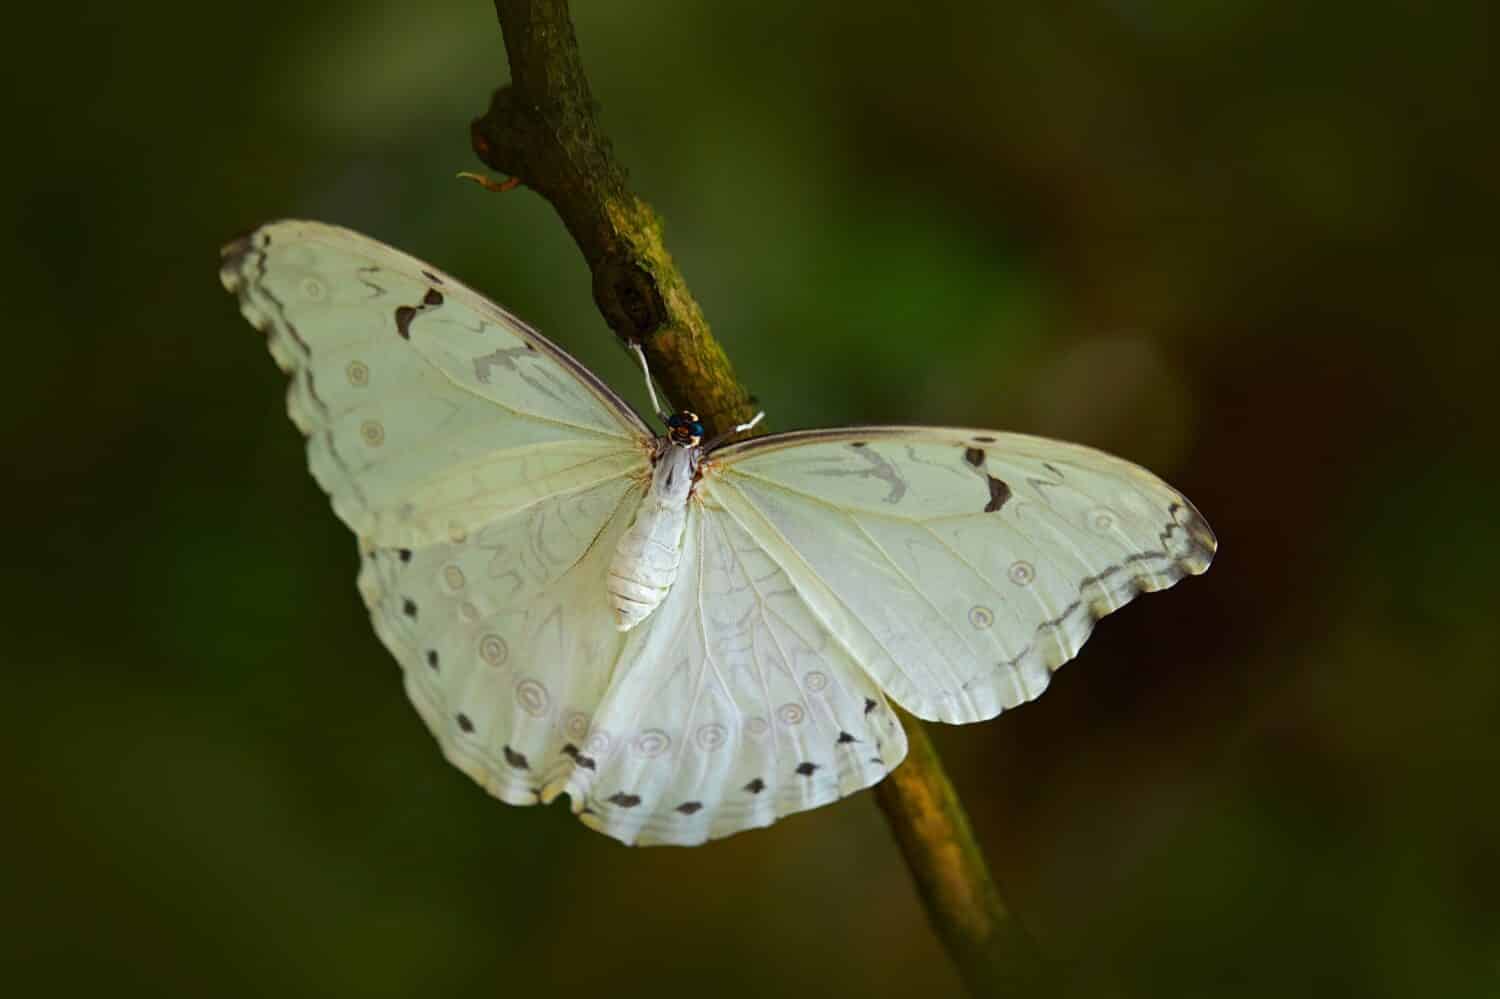 Farfalla bianca su foglie verdi nella giungla tropicale.  Morpho polyphemus, il morpho bianco, farfalla bianca del Messico e dell'America centrale.  Insetto esotico nell'habitat tropicale della natura.